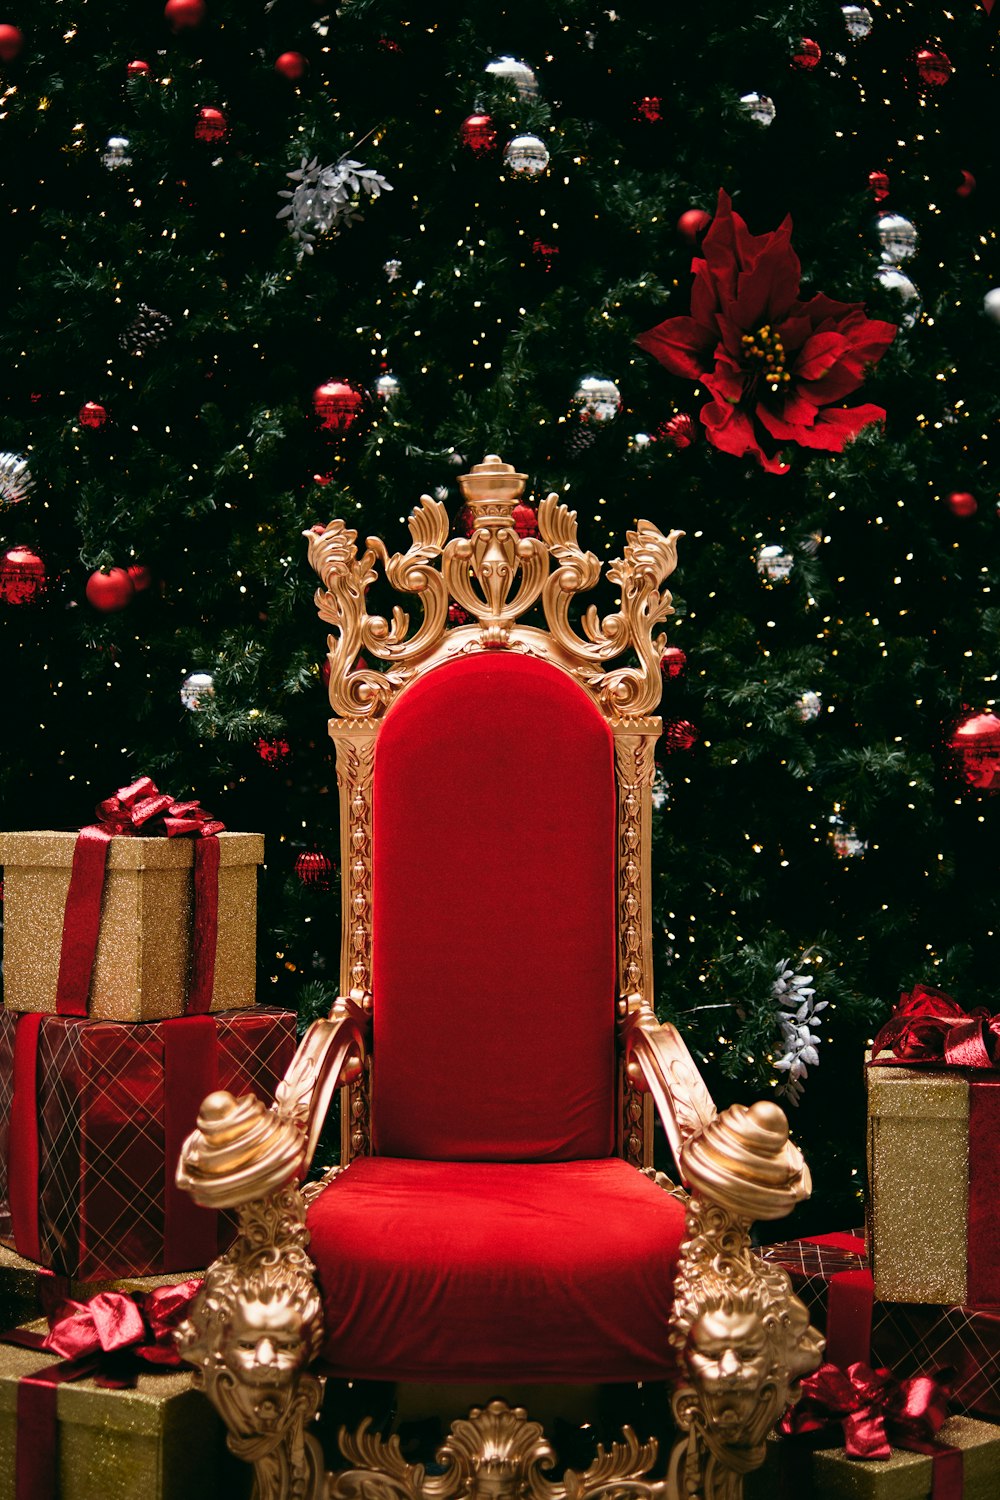 золотой и красный трон рядом с подарочными коробками